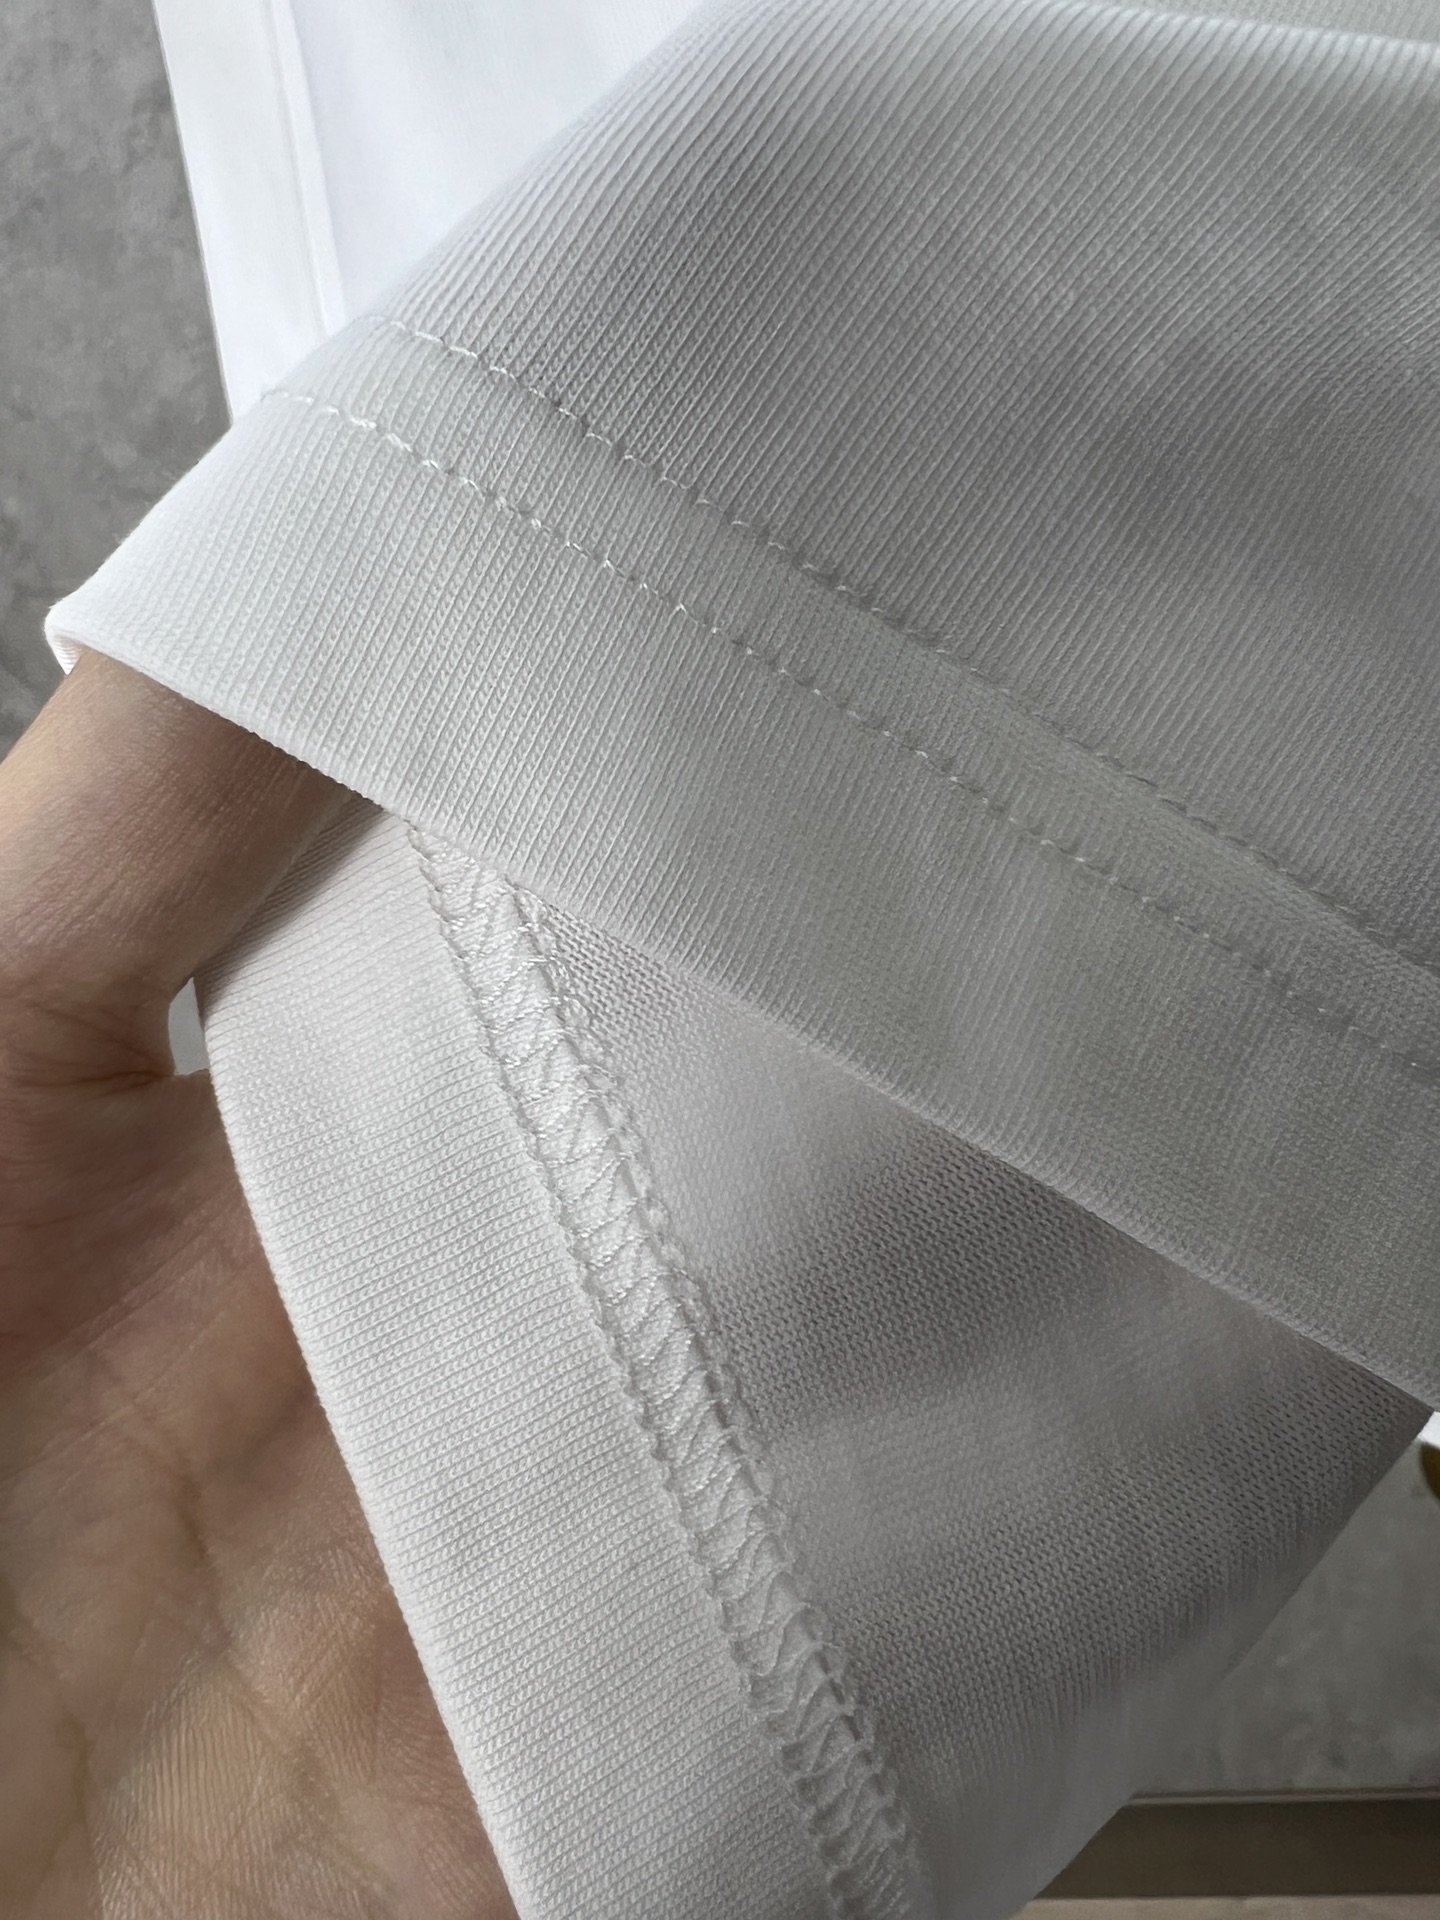 Dior迪奥24ss字母T恤双纱32支240克-专柜同步市面最高版本原版开发定织面料工艺洗水处理厚实感十